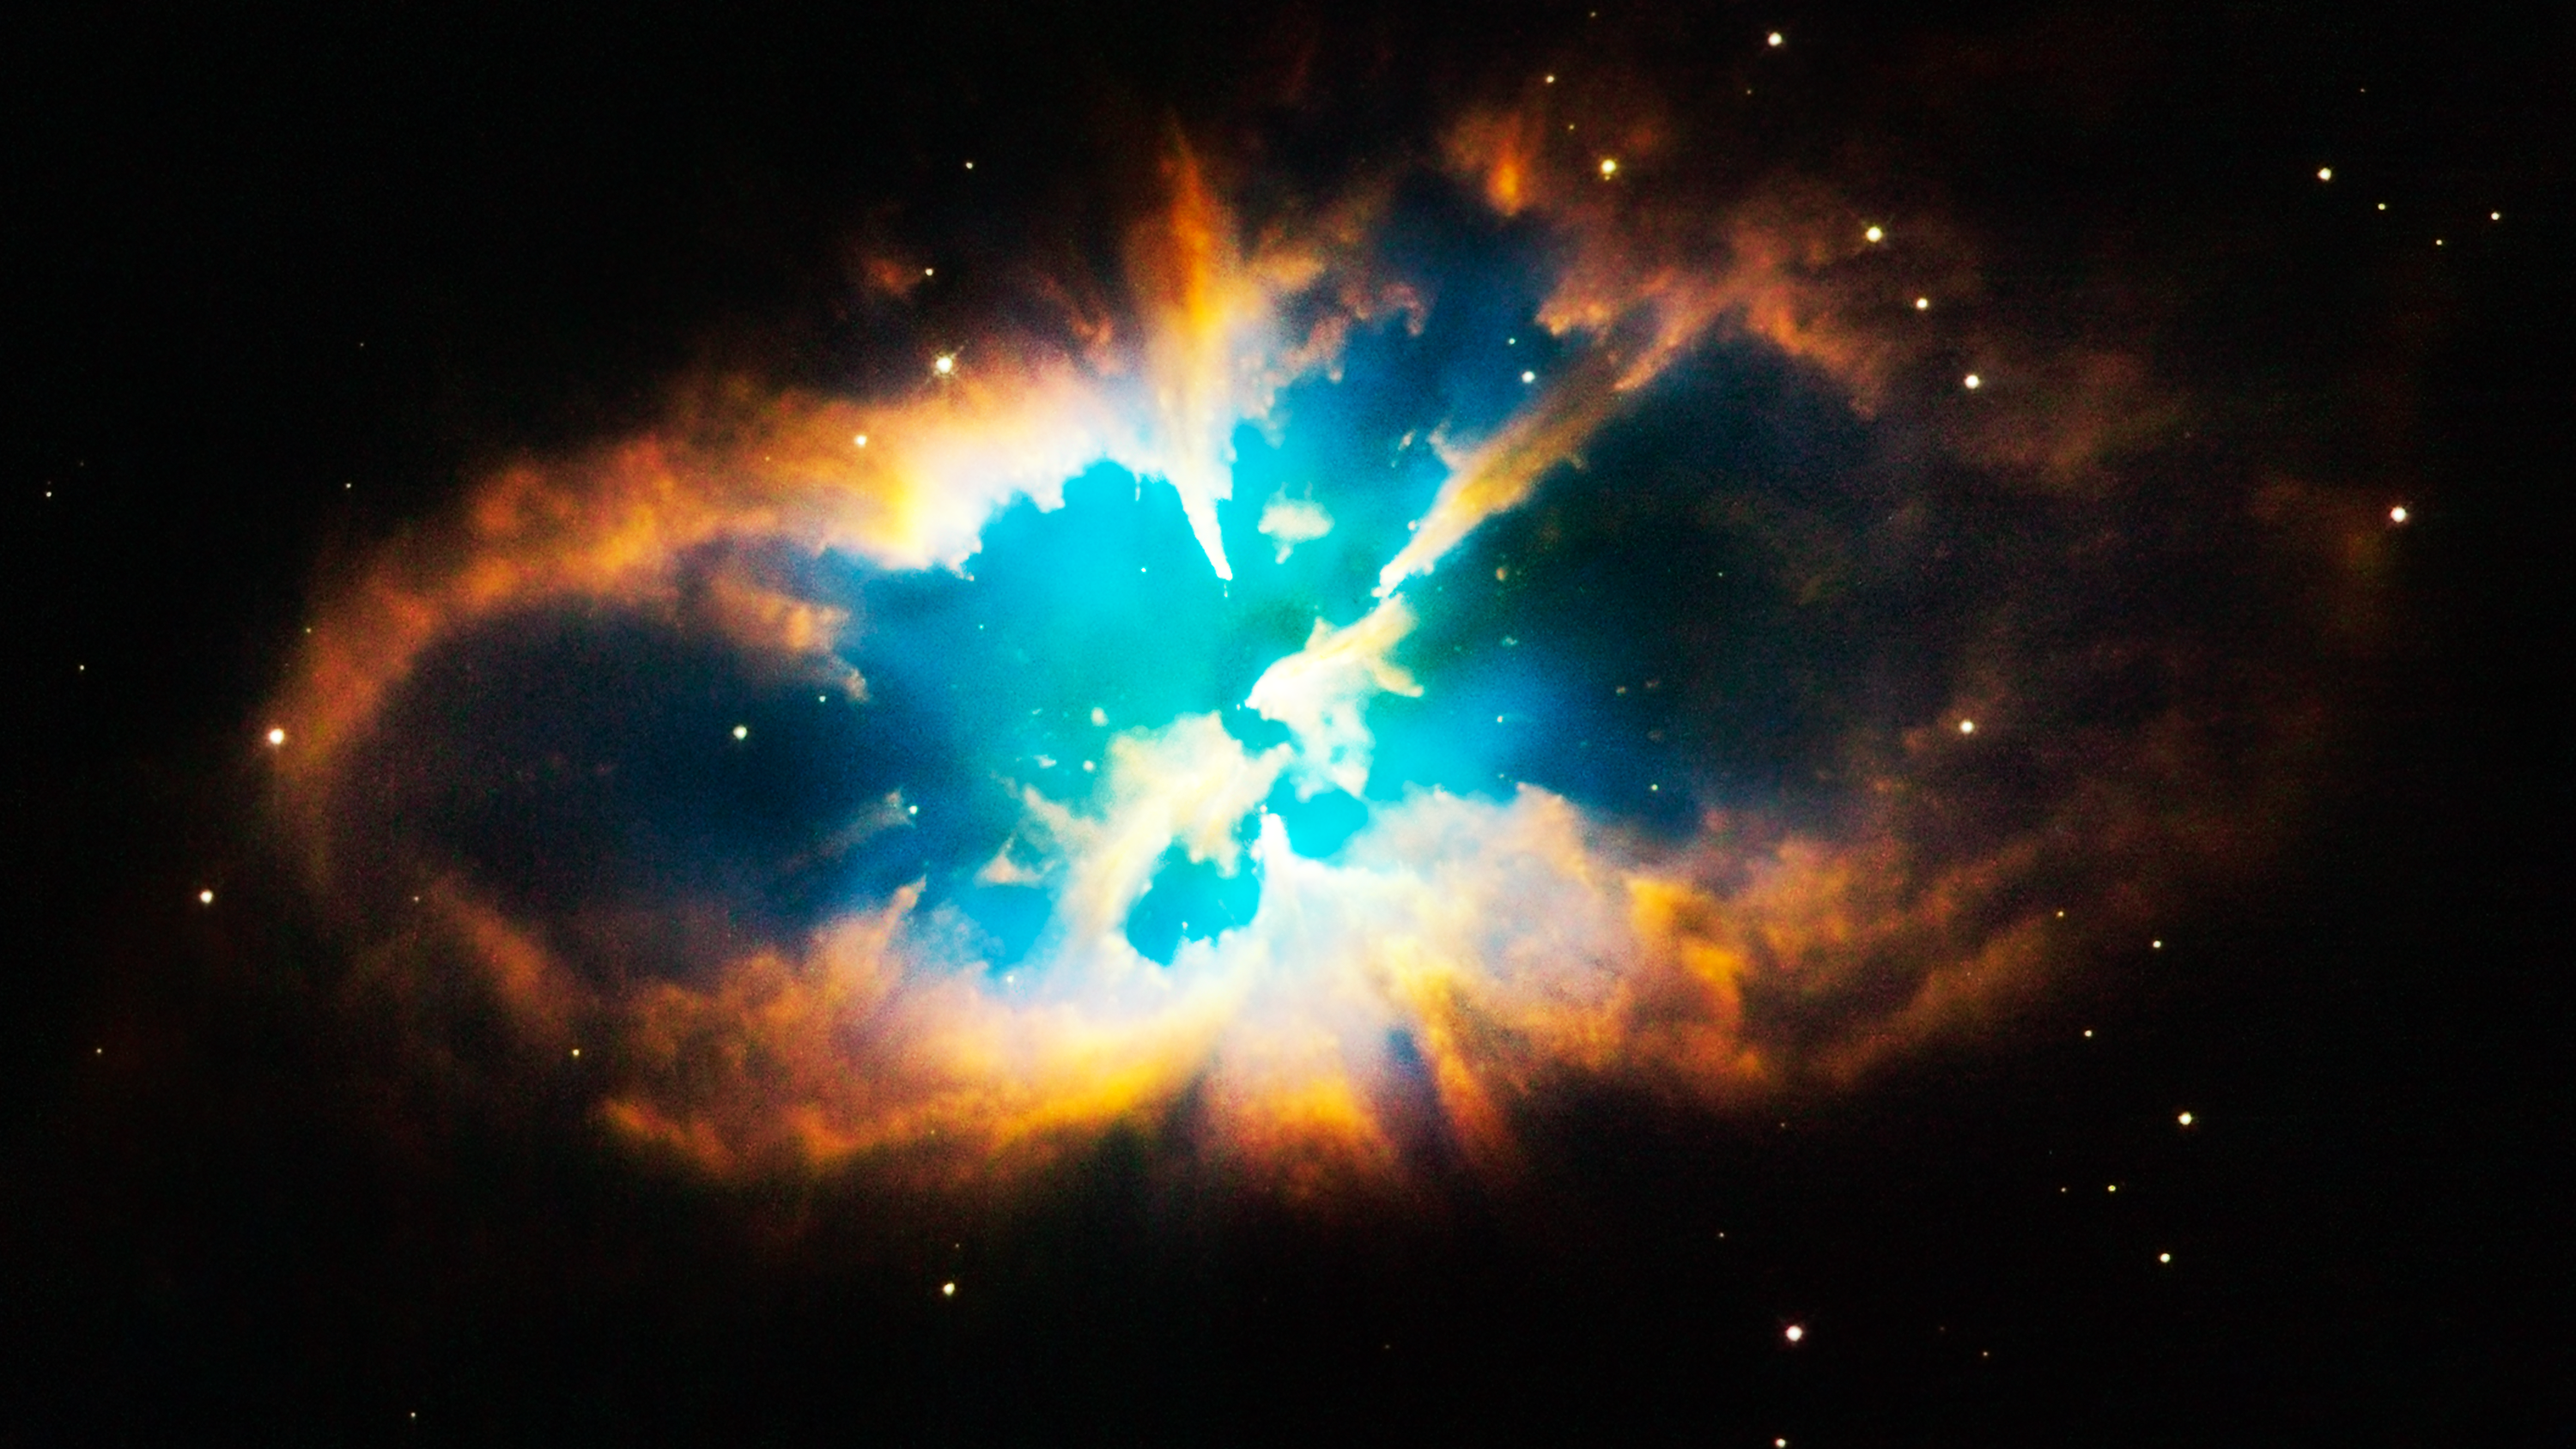 Hubble Hd Telescope Images Hd - HD Wallpaper 